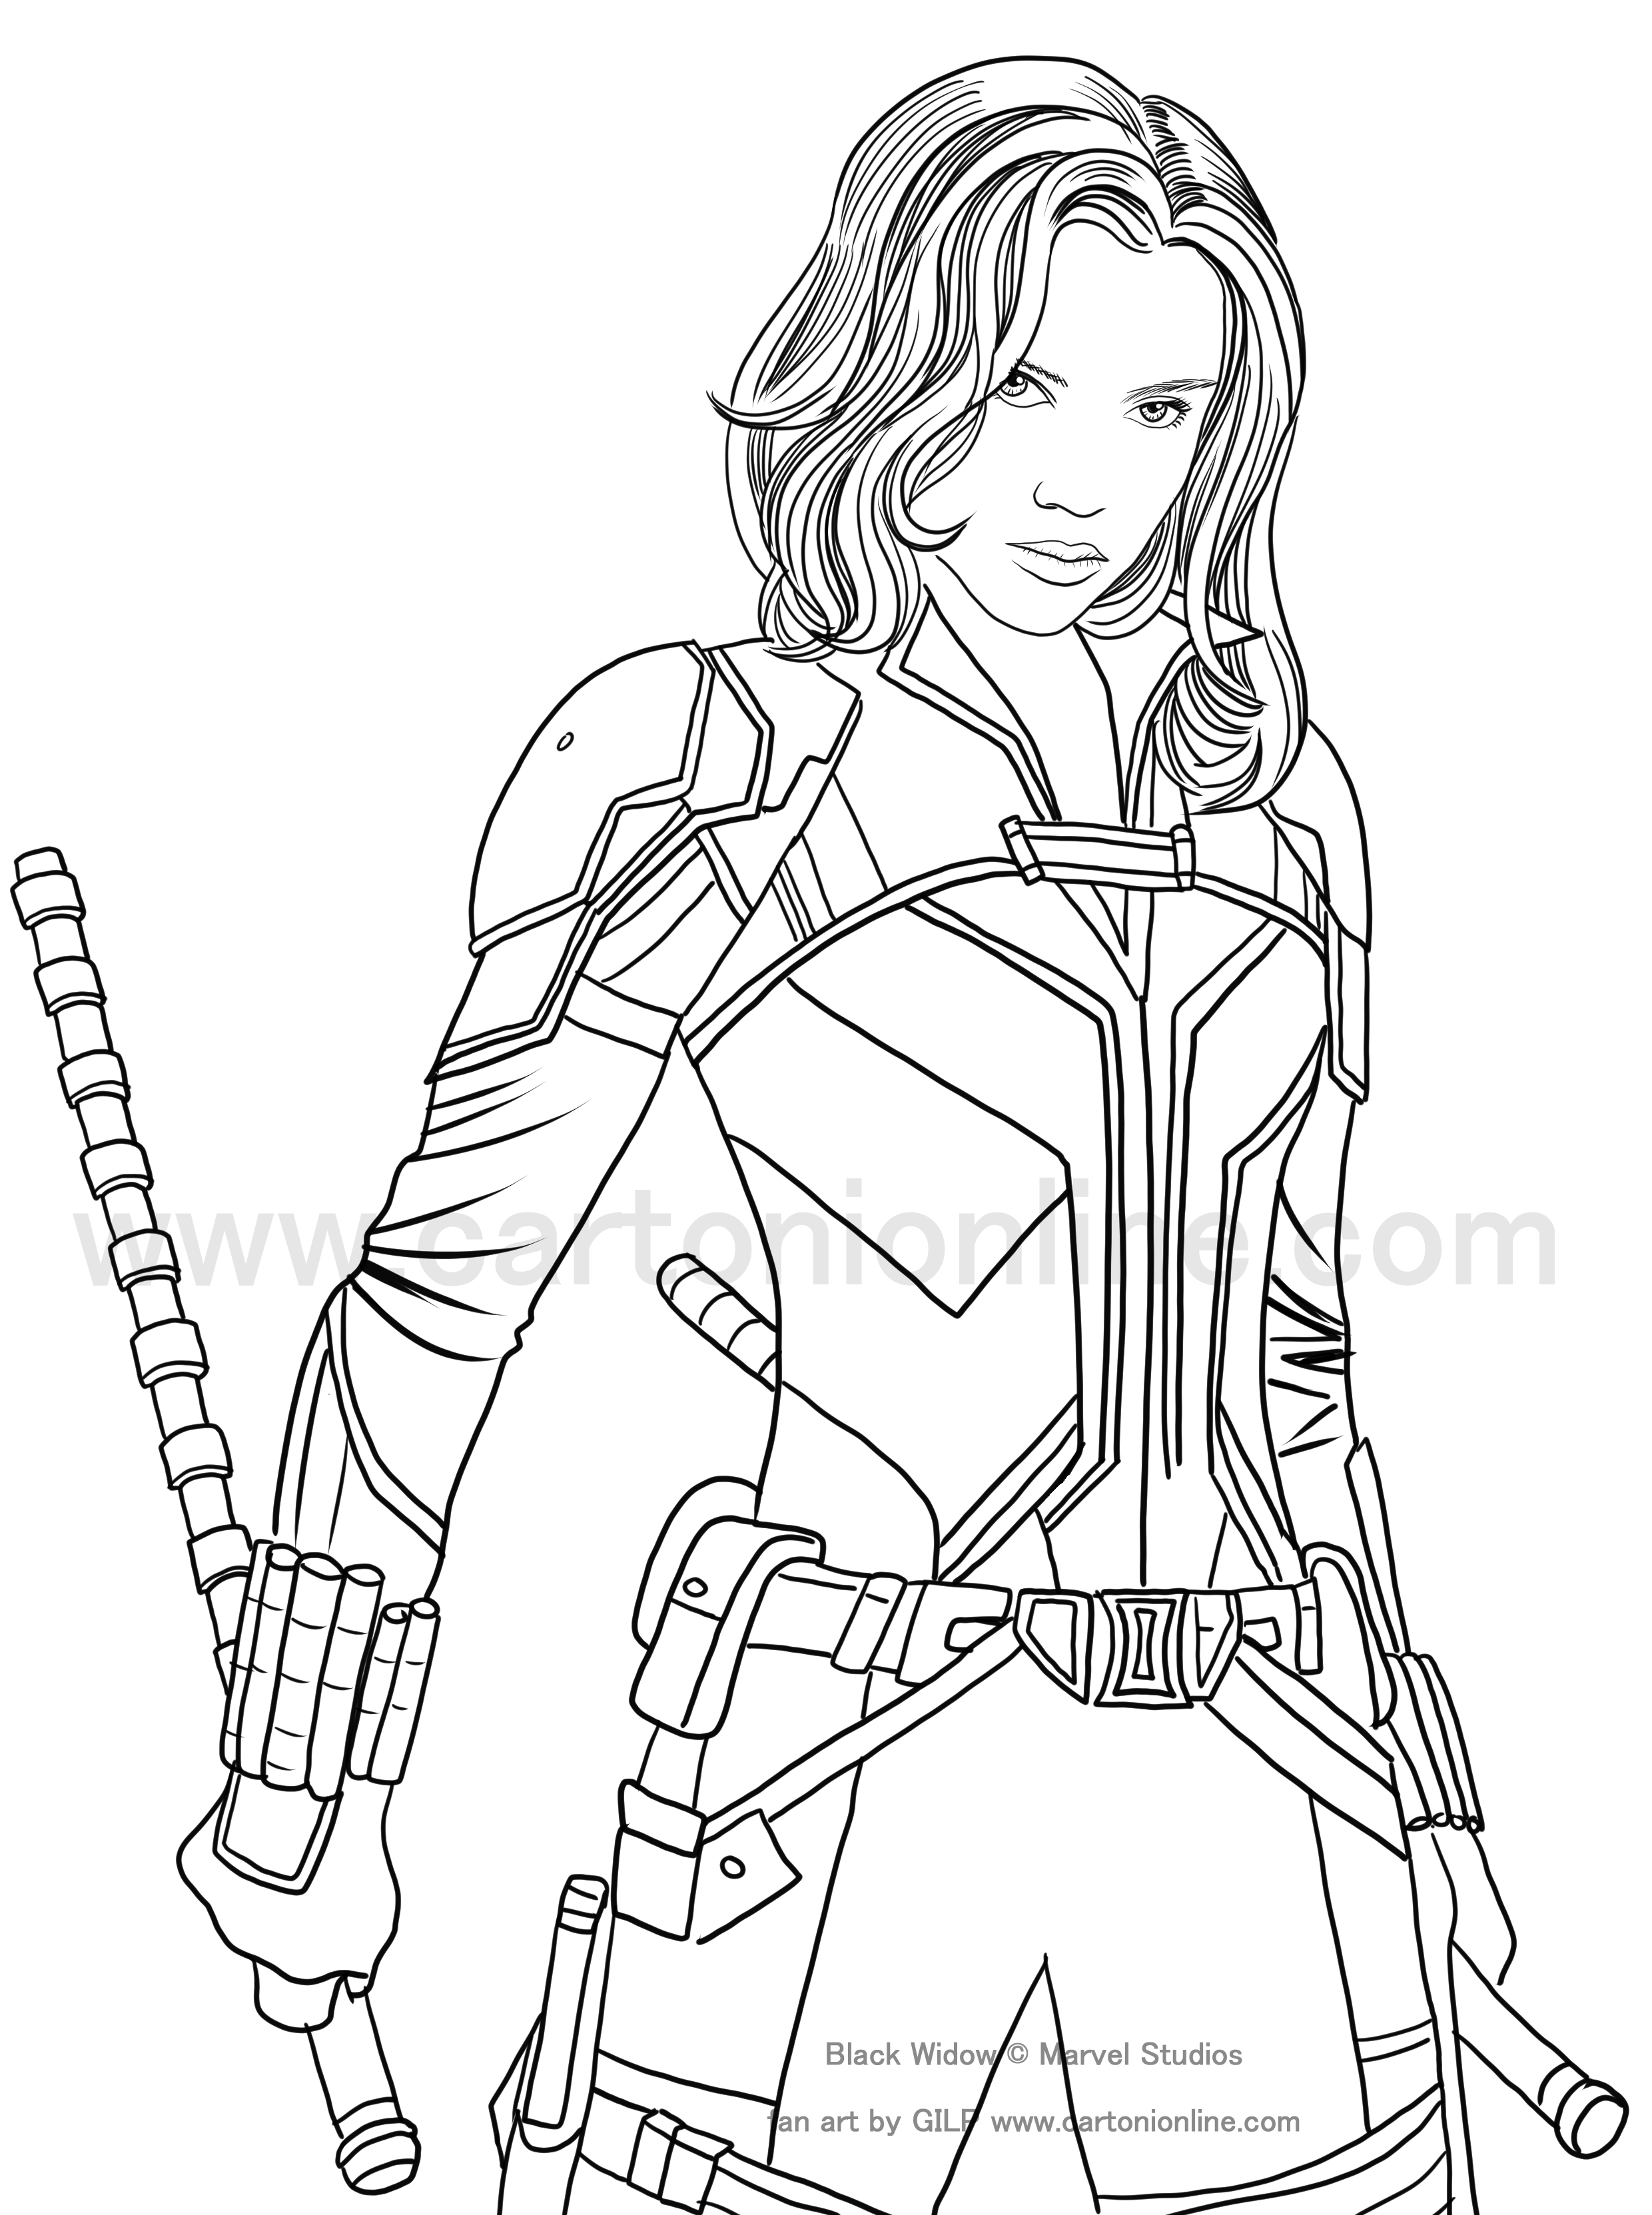 Disegno di Black Widow (Scarlett Johansson) 02 di Black Widow (movie) da stampare e colorare